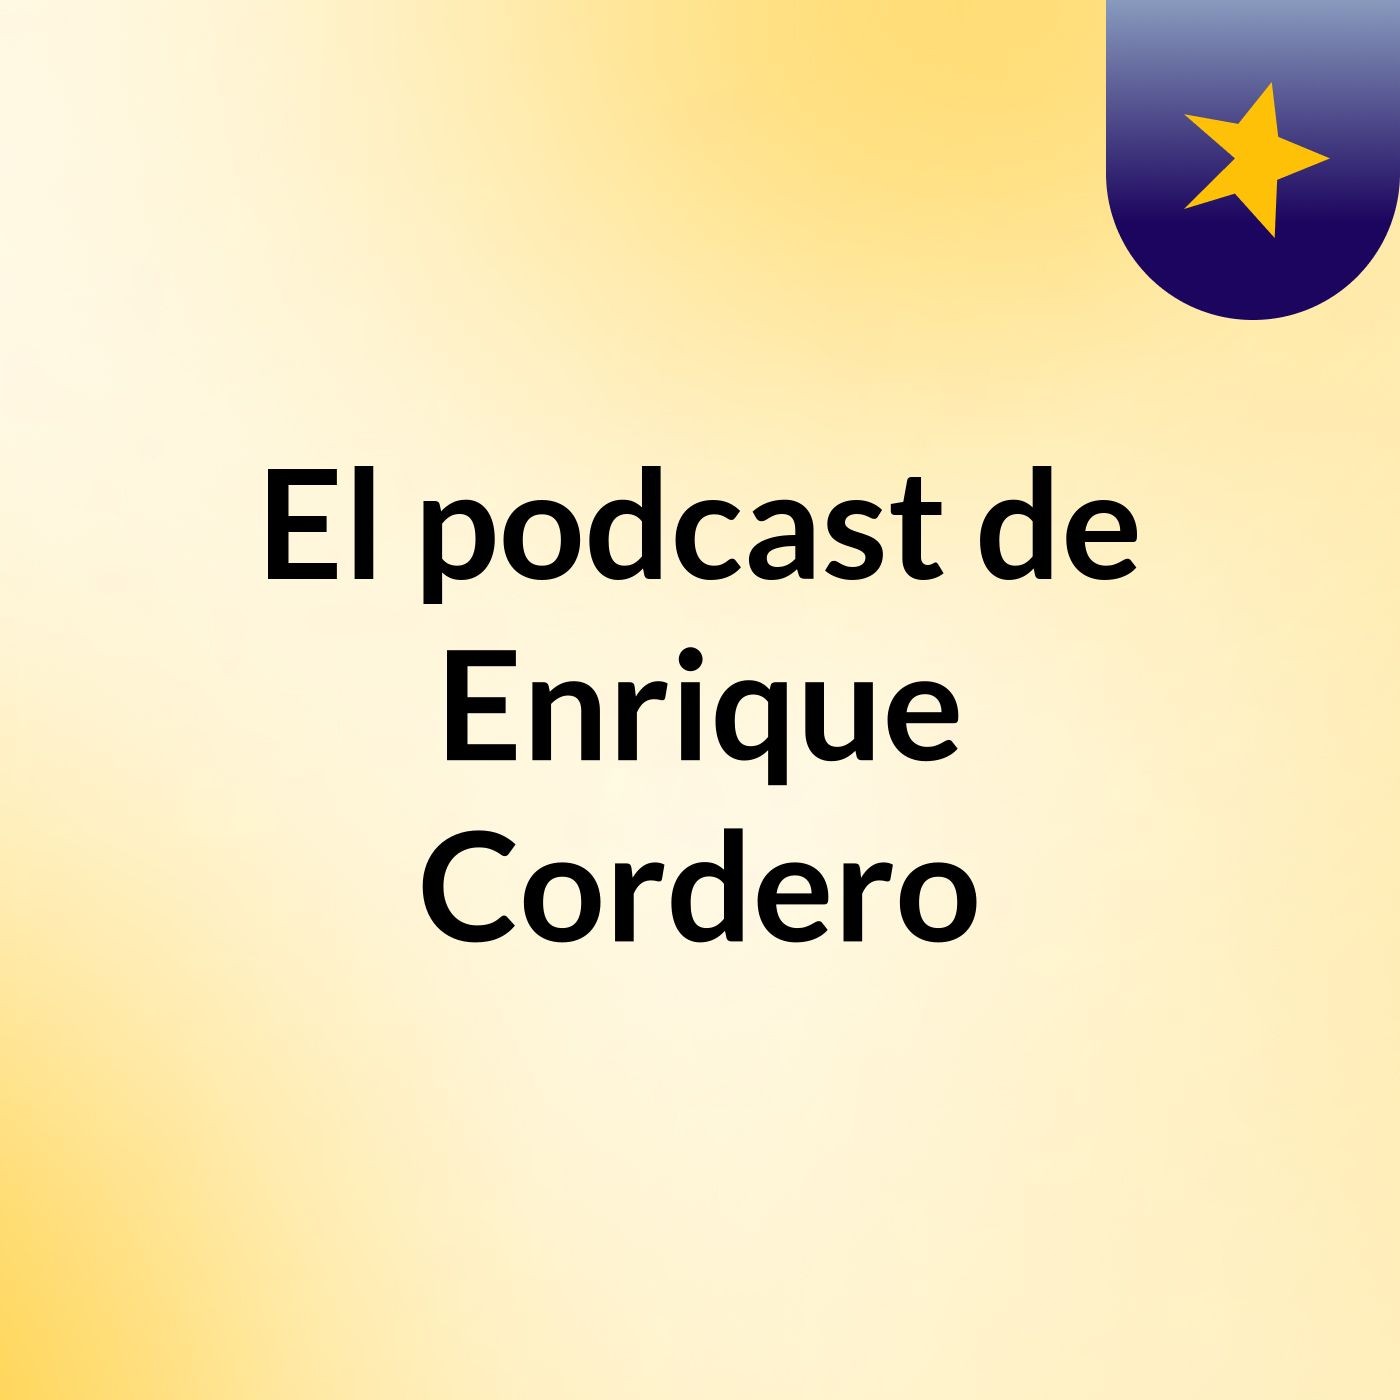 El podcast de Enrique Cordero